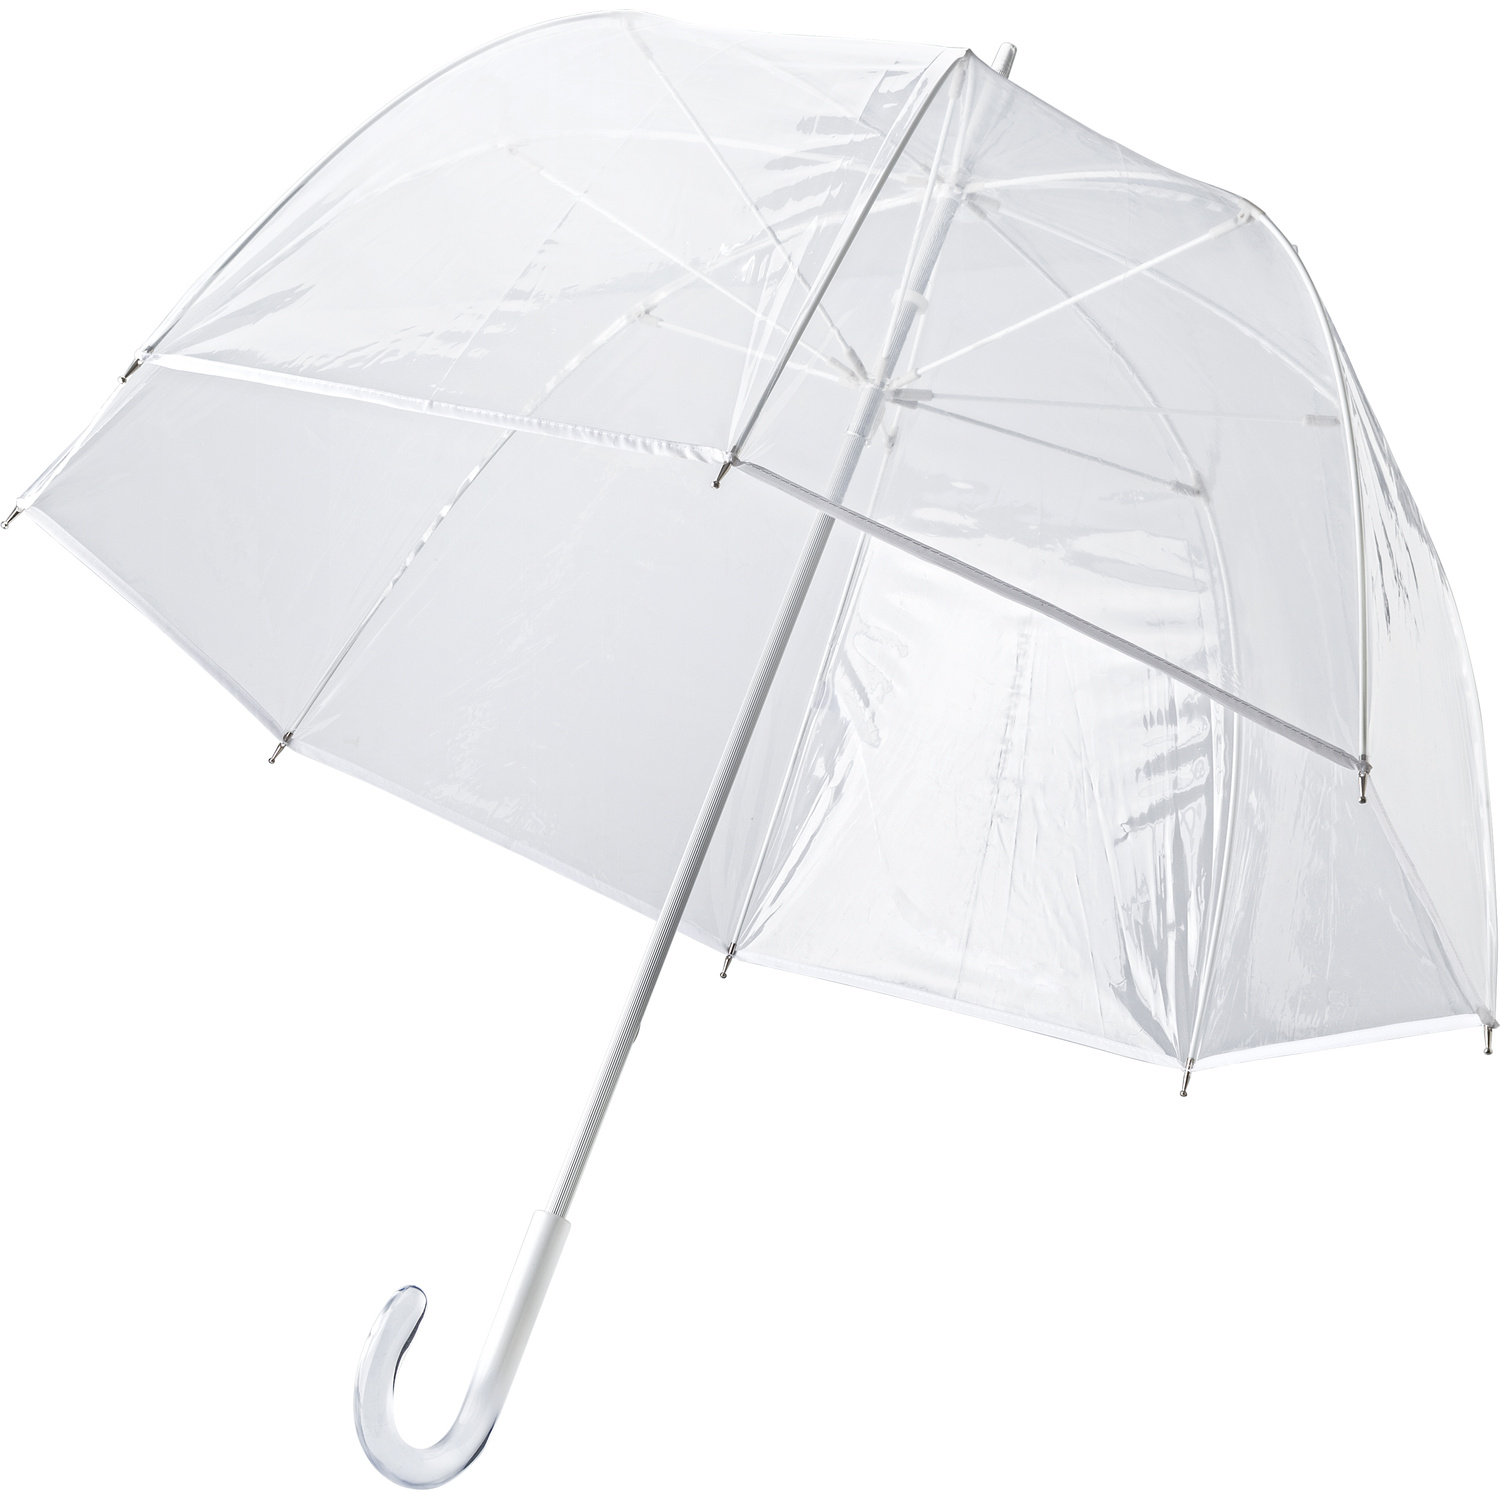 007962 002999999 3d045 ins pro01 fal - Twin-layer umbrella